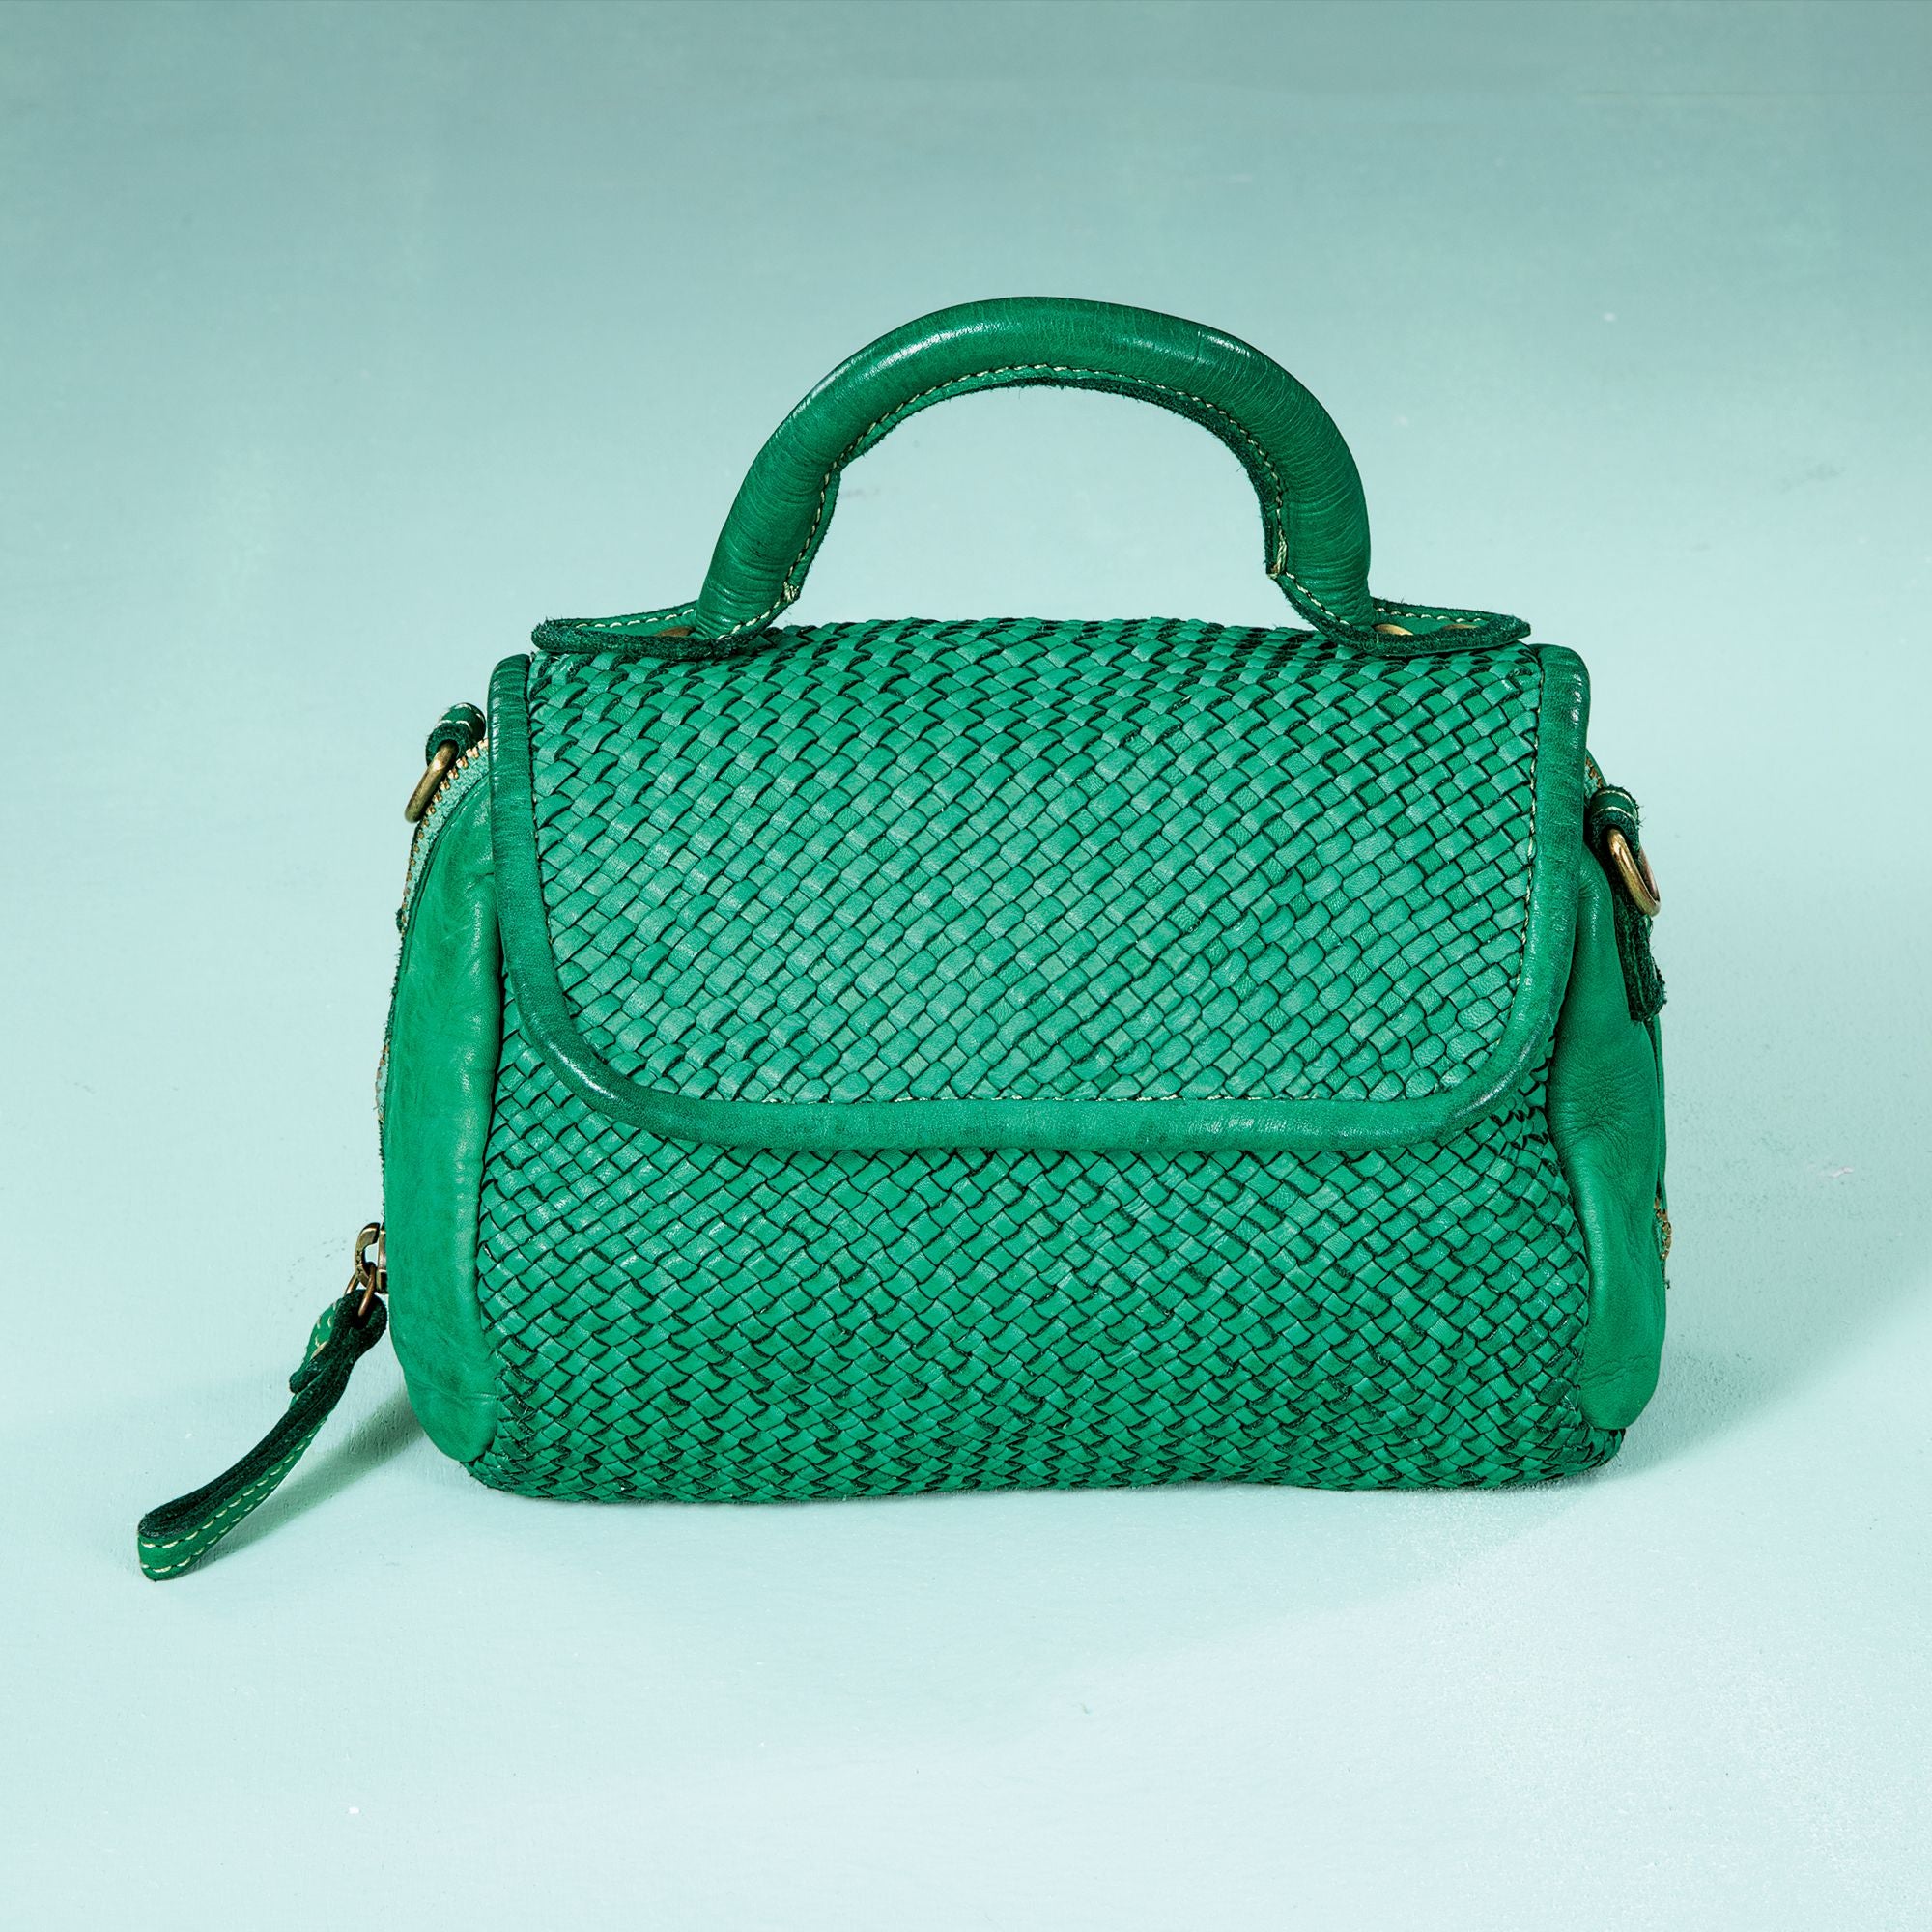 Tivoli Woven Italian Leather Green Mini Bag